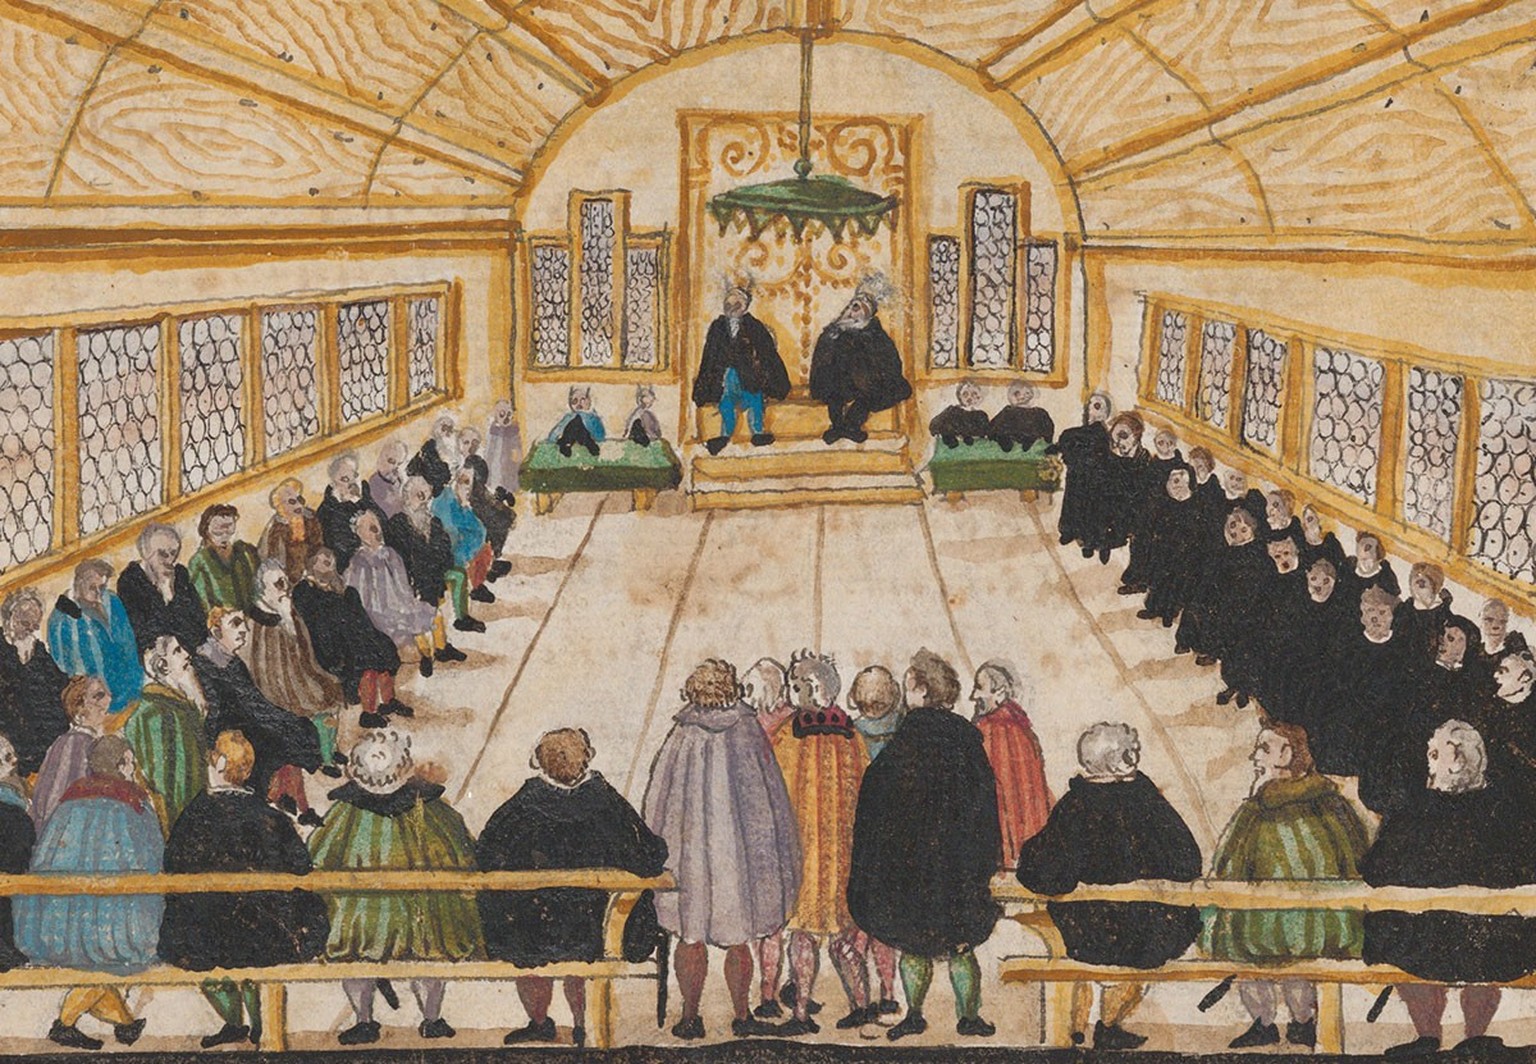 Am 17. Januar 1525 wird auf dem Rathaus in Zürich eine Disputation über die Täufer abgehalten, welche eher einem Verhör gleicht.
https://www.e-manuscripta.ch/zuz/content/zoom/936984